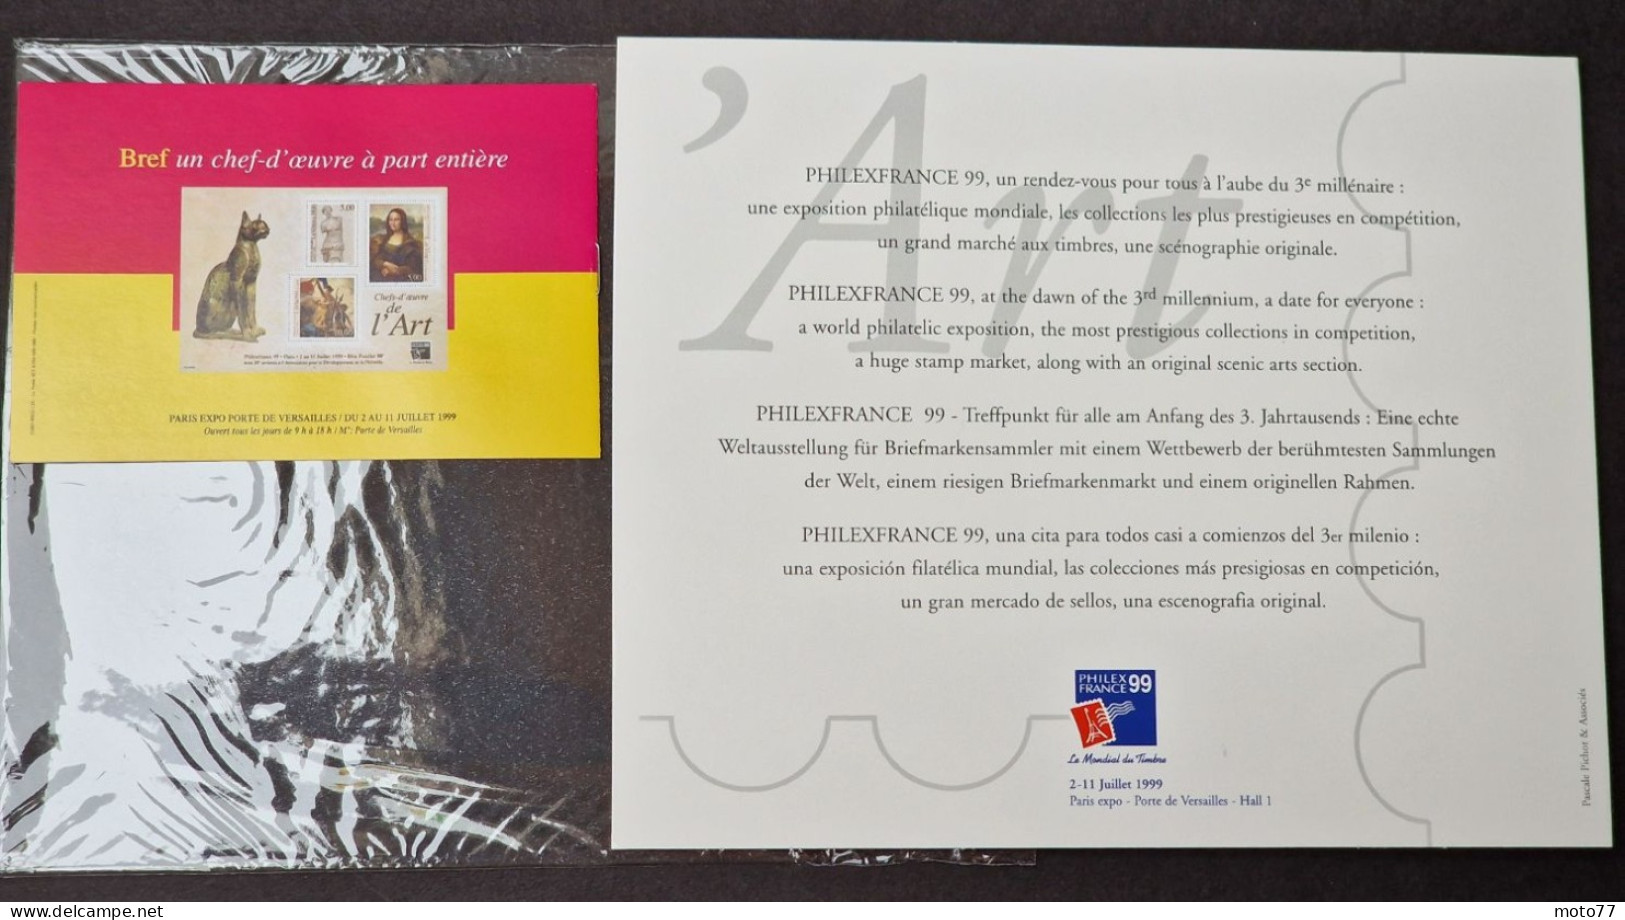 TIMBRE France BLOC FEUILLET 23 version GRIS neuf - 1999 timbres 3234 3235 3236 - Yvert & Tellier 2003 coté + de 35 €